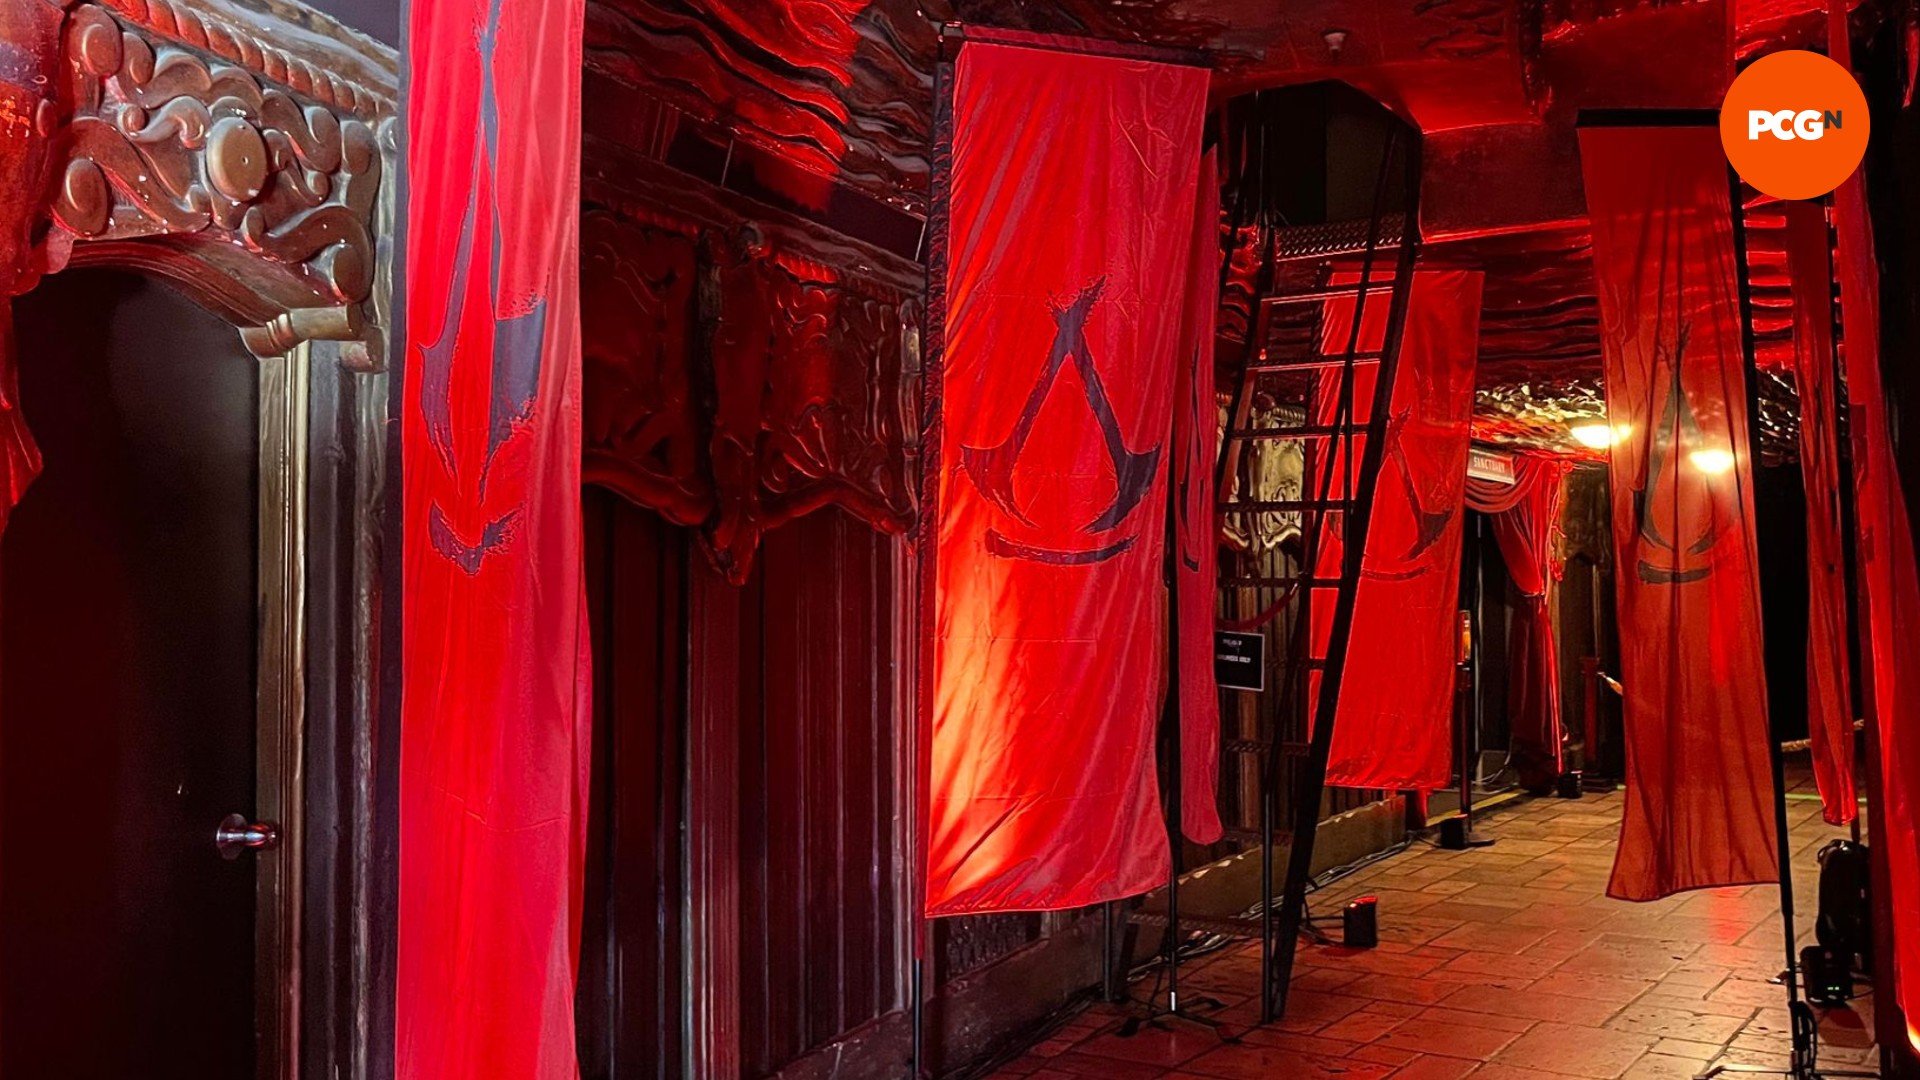 Assassin's Creed: Shadows bayraklarıyla kaplı karanlık bir koridorun görüntüsü